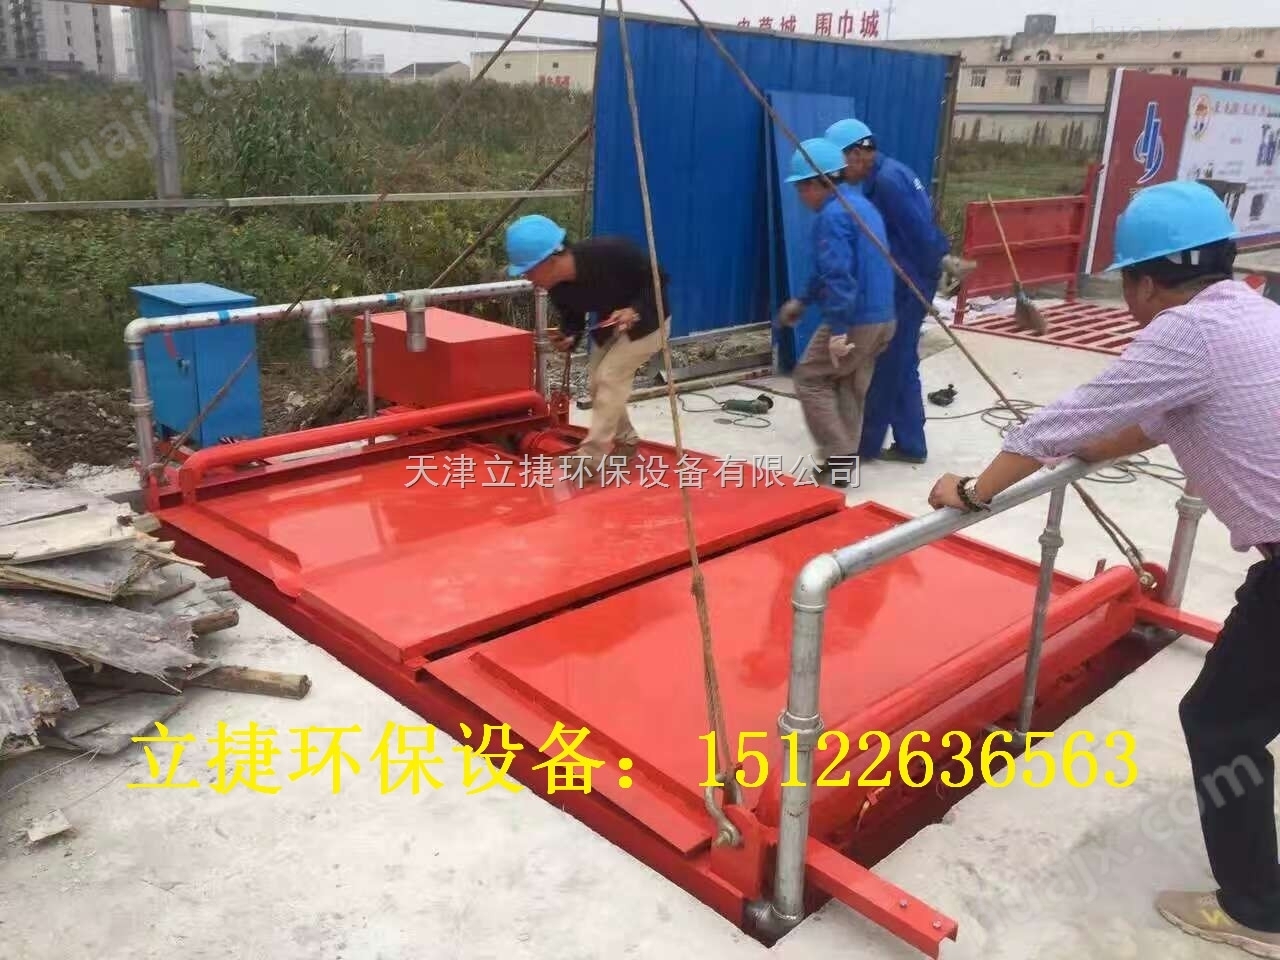 天津滨海新区基坑式滚轴洗车机立捷jklj-110-g